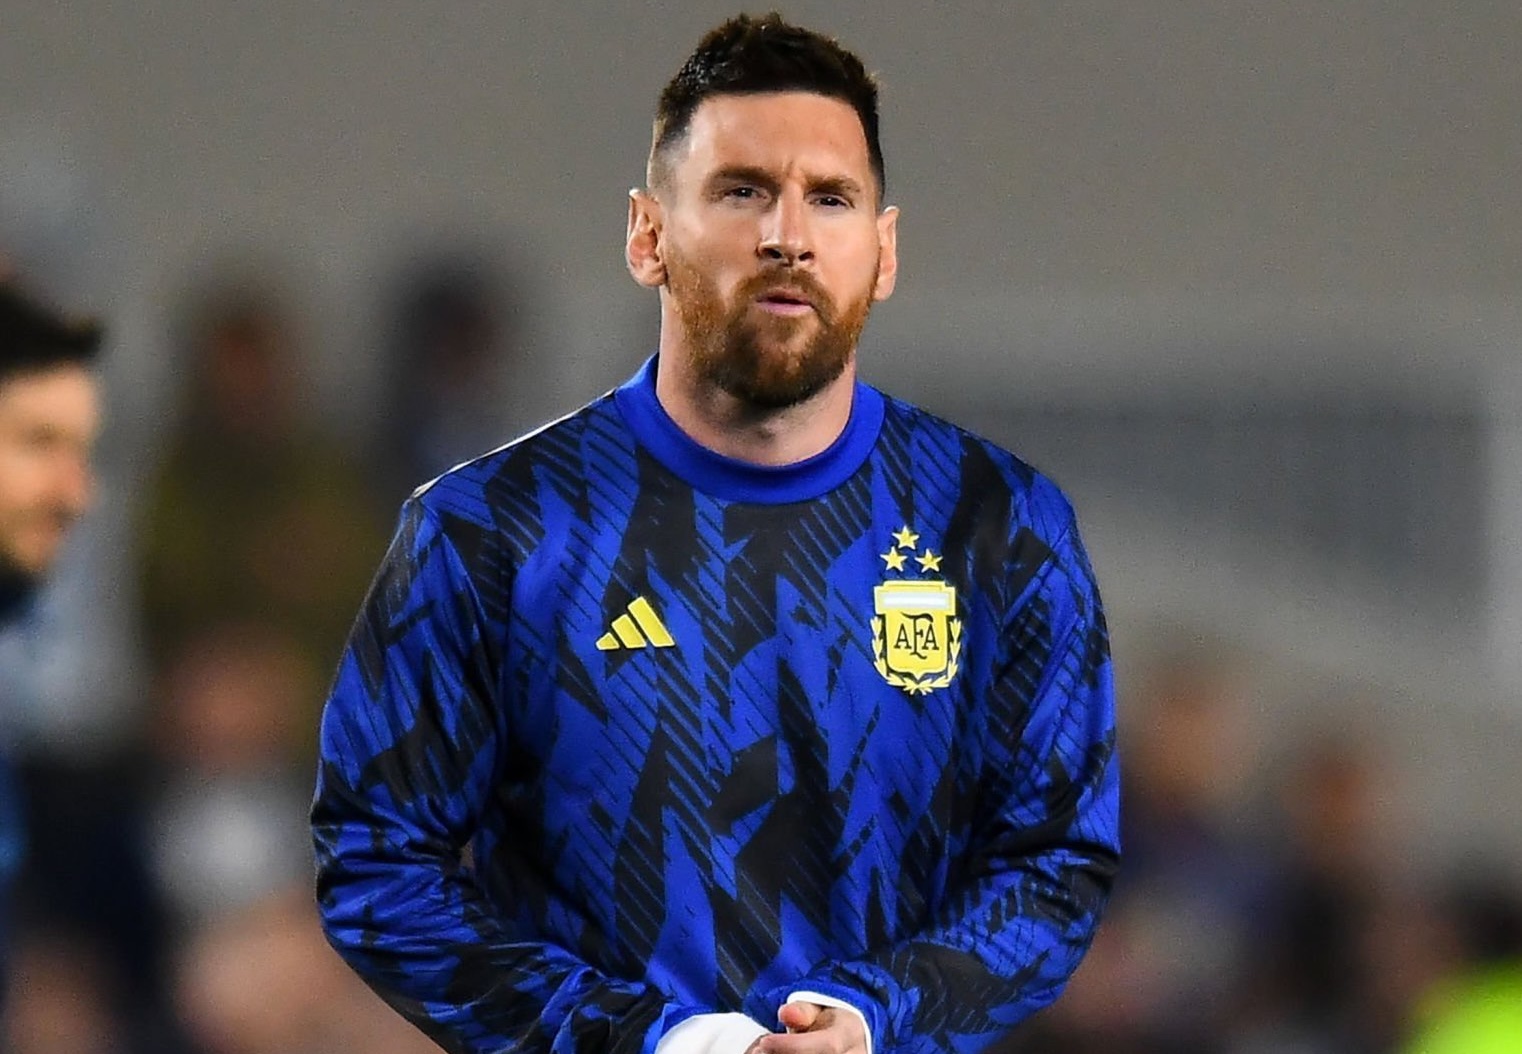 Vì sao Messi ngồi dự bị trong trận đội tuyển Argentina thắng Paraguay?